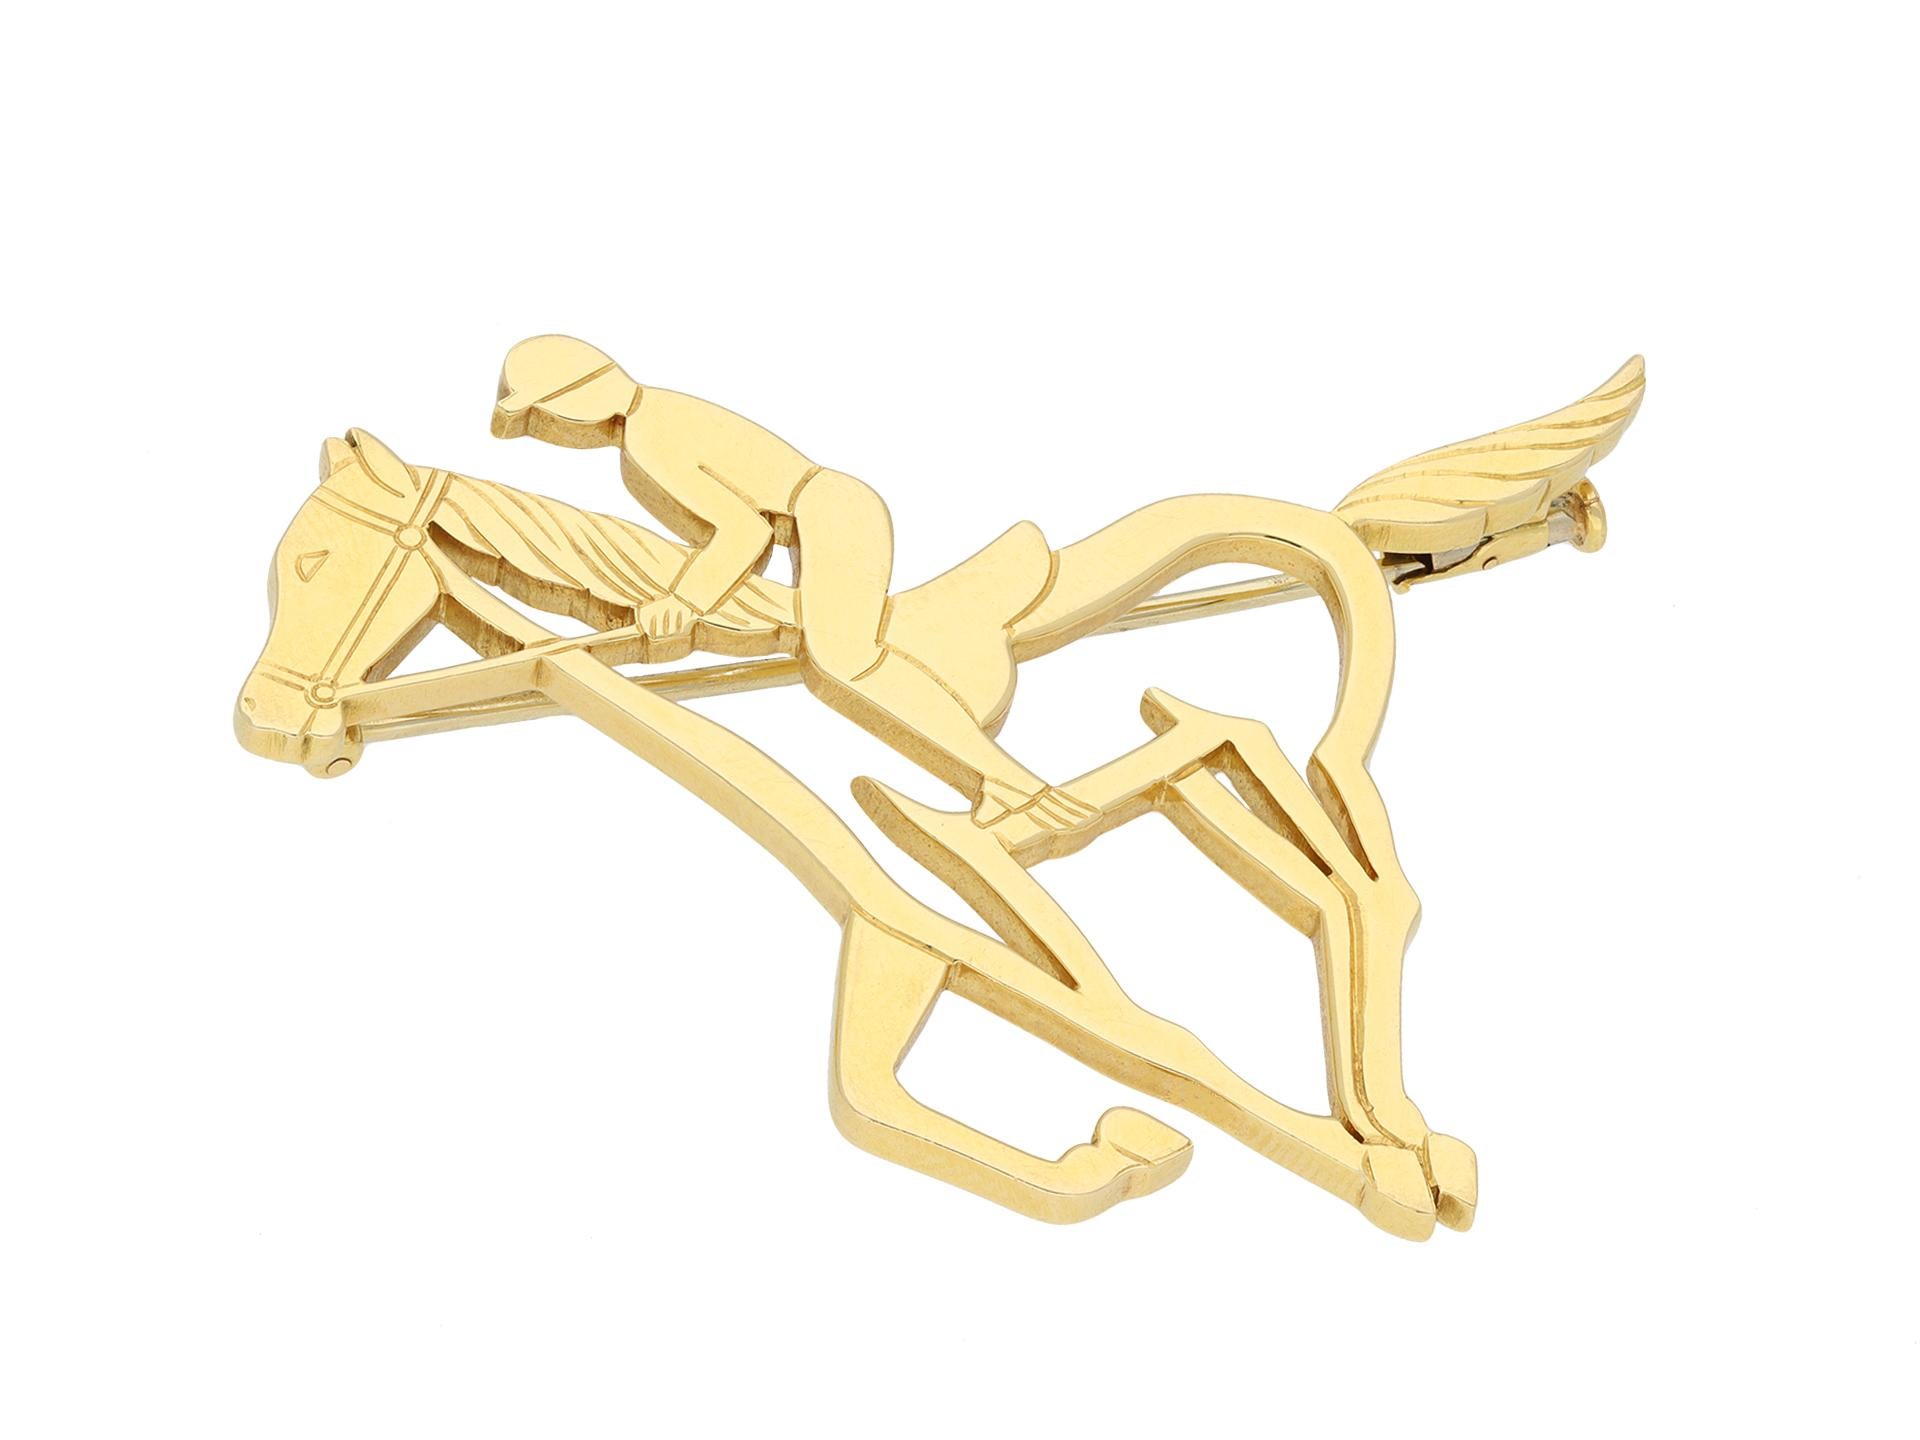 Broche cheval en or André Vassort. Broche en or jaune sous la forme d'un cheval et d'un cavalier, présentant un ajourage complexe avec des détails sculptés et une bordure polie, le revers étant monté avec une épingle à charnière sécurisée, d'une